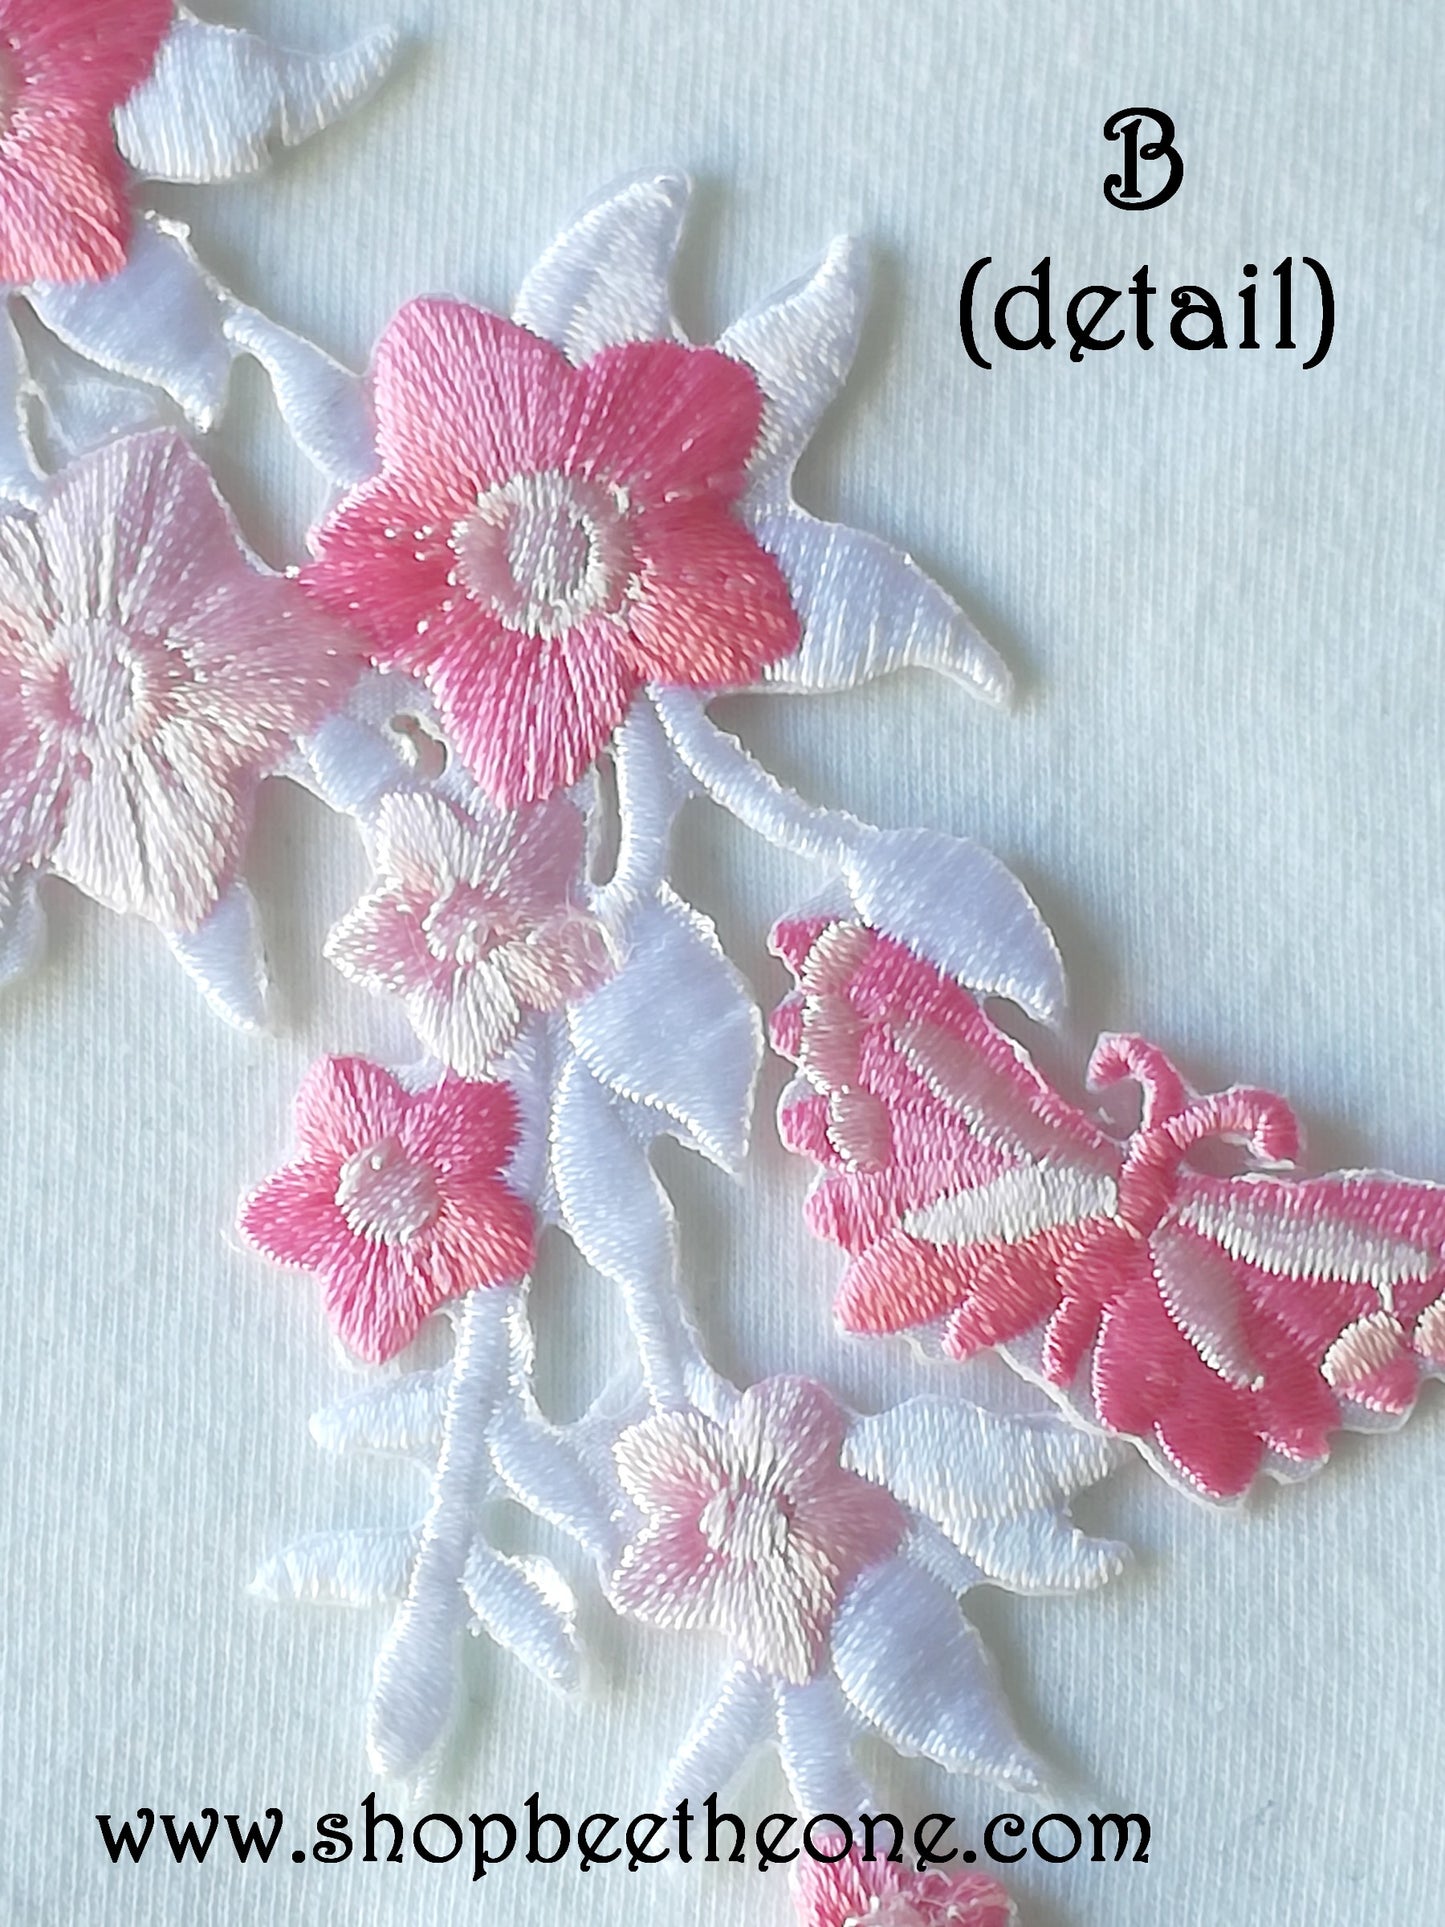 Maxi Applique broderie patch thermocollant Tige fleurie avec papillons 27 x 6,5 cm (à coudre ou repasser) - 5 coloris au choix